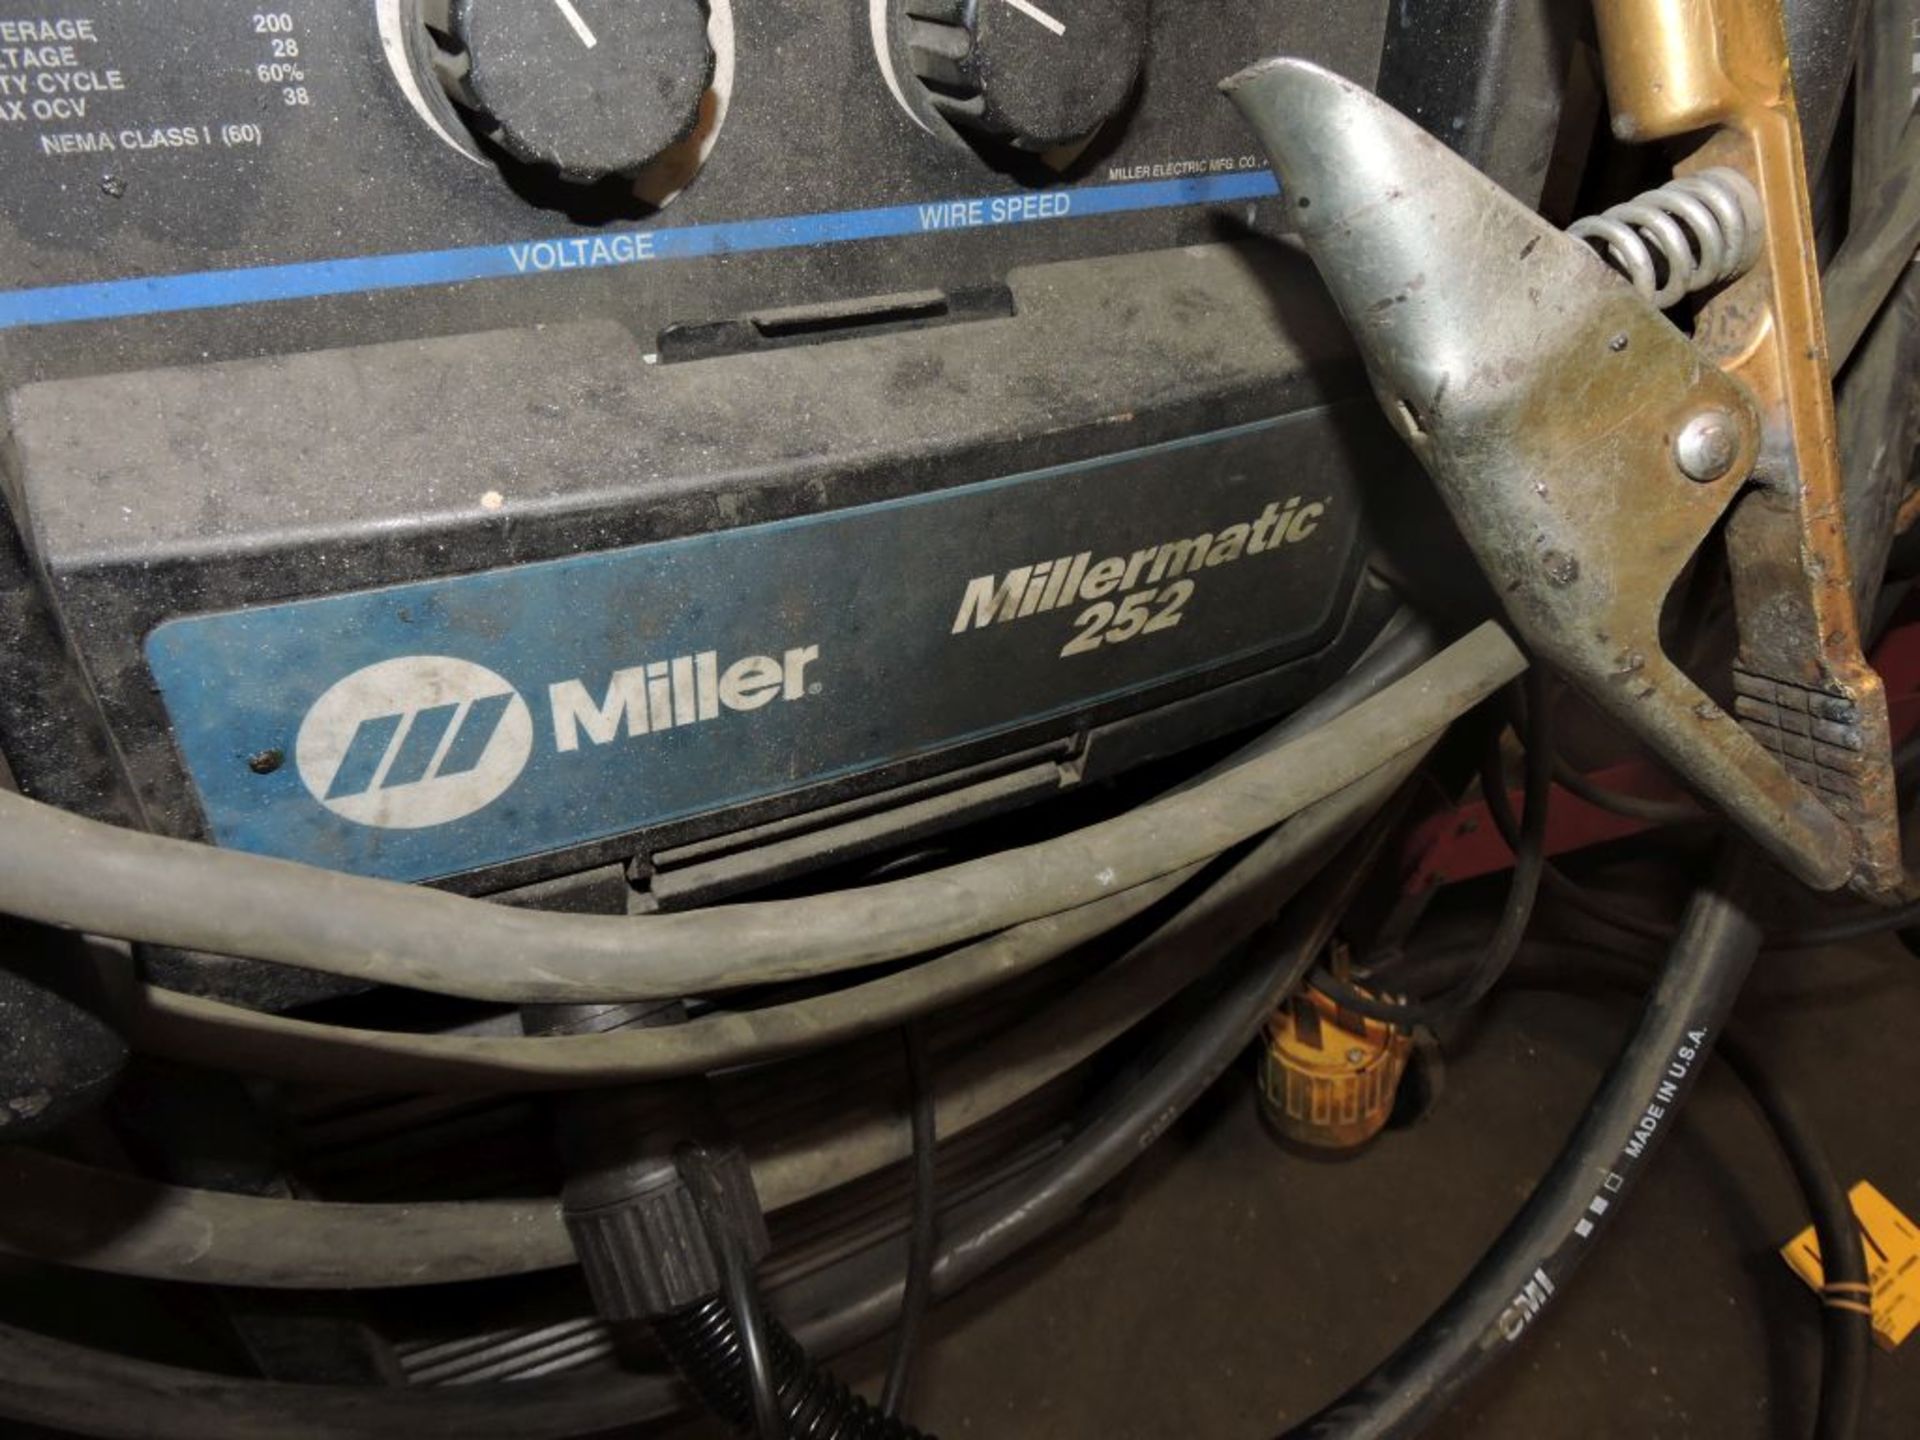 Millermate 252 welder. - Image 2 of 3